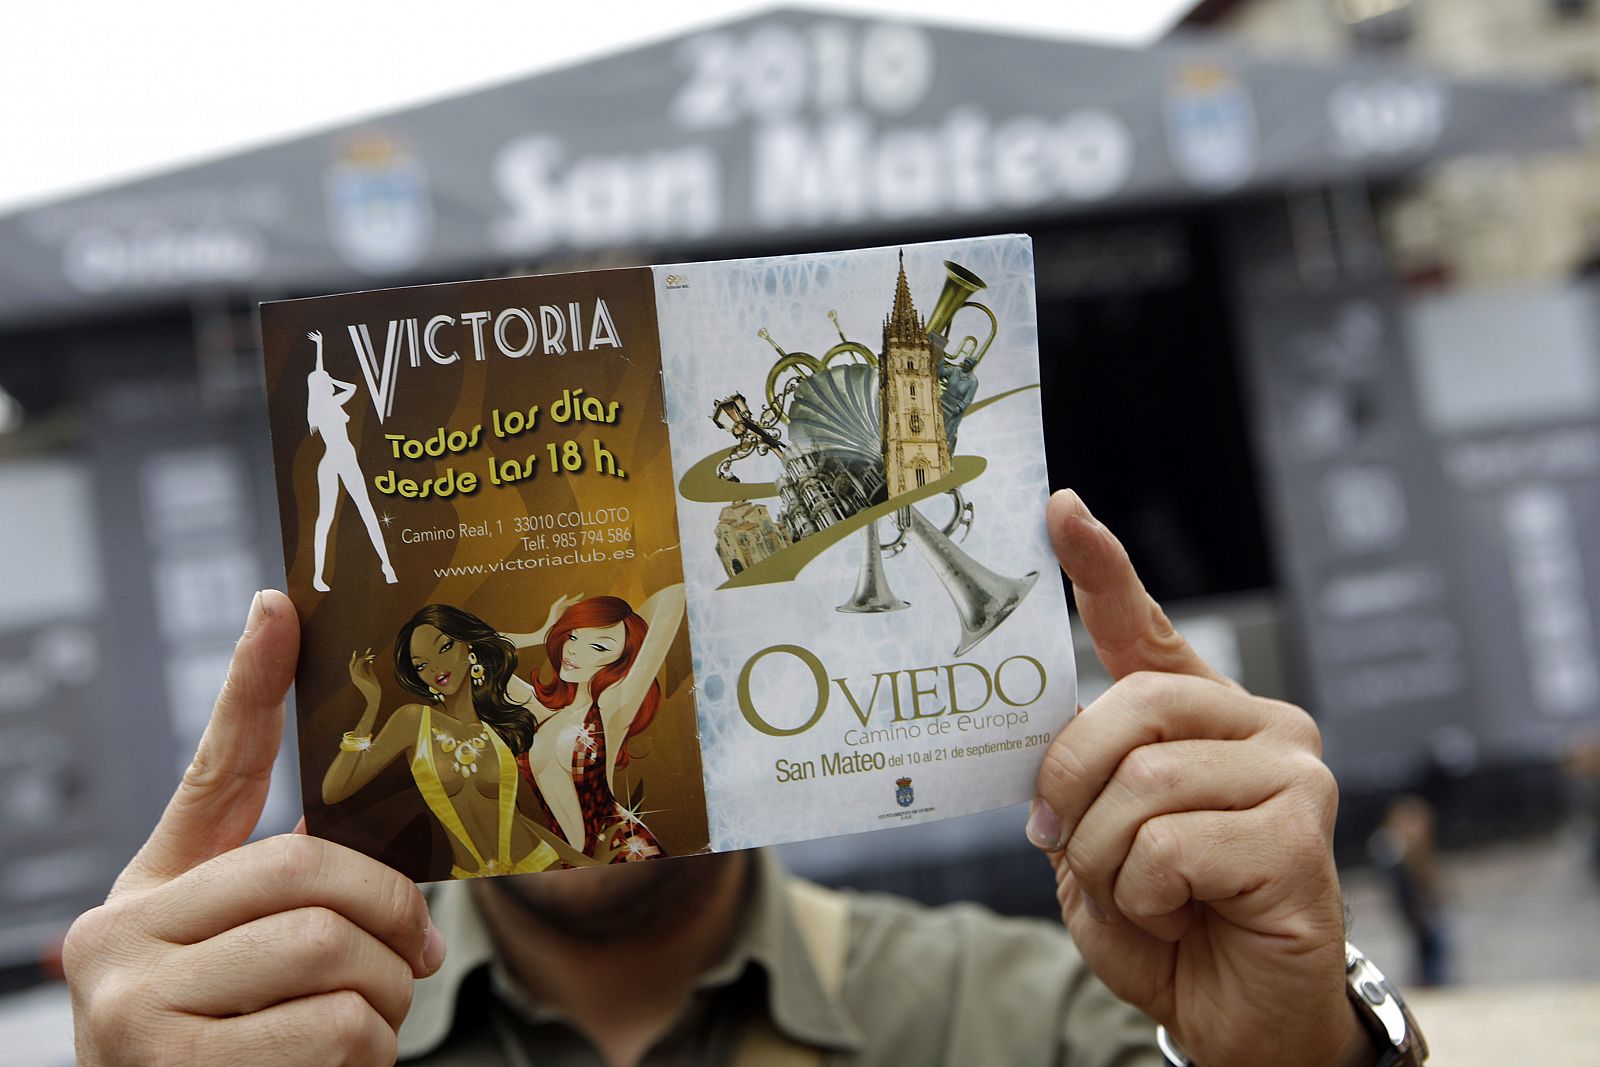 La contraportada del folleto de fiestas de Oviedo es un anuncio de un club de alterne